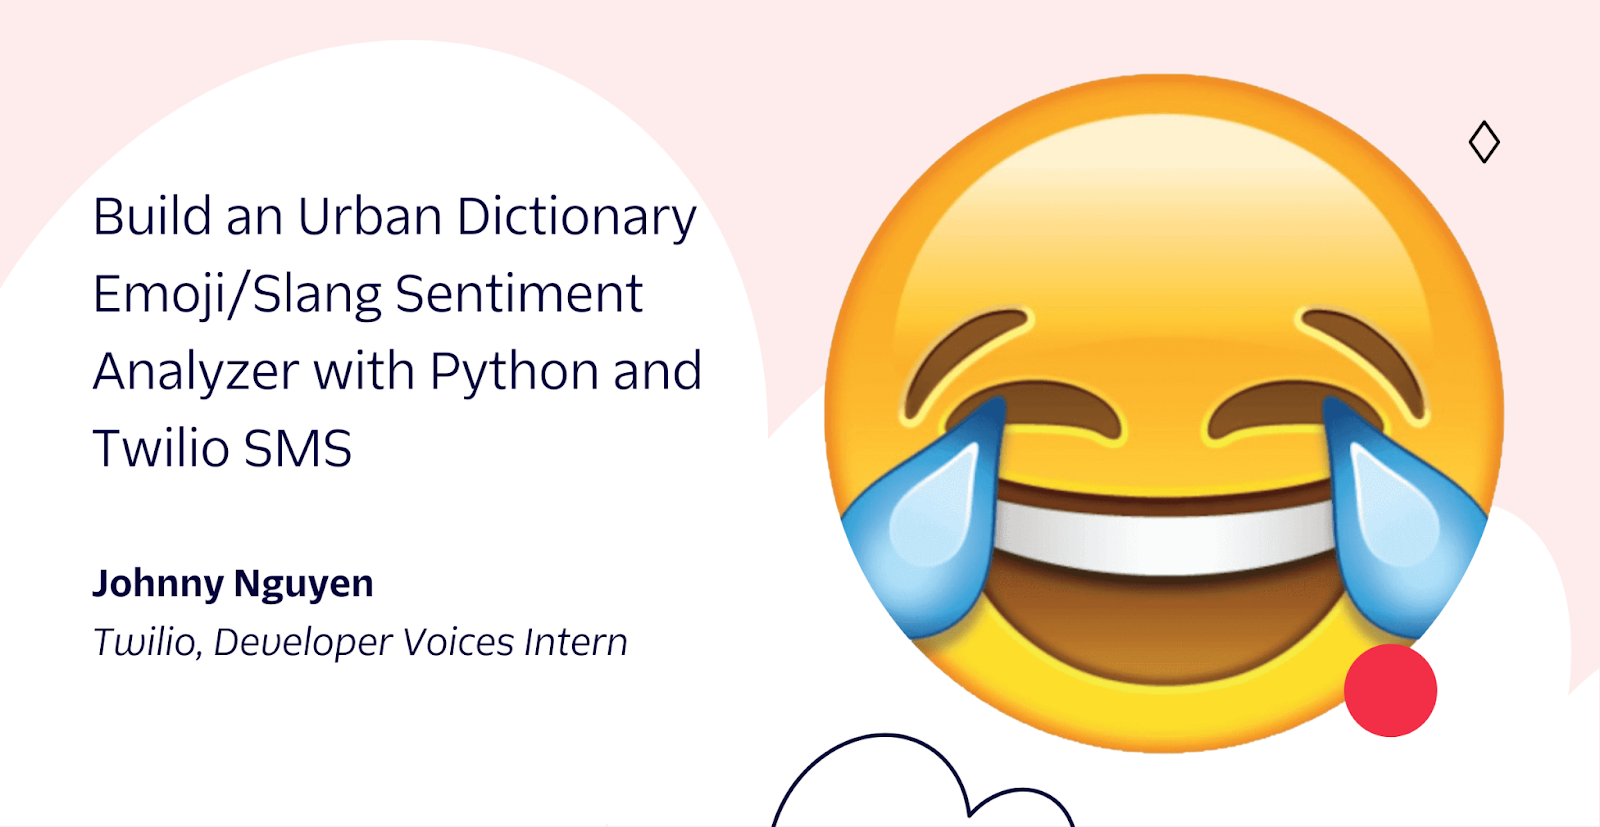 build an urban dictionary emoji slang sentiment analyzer with python and twilio sms